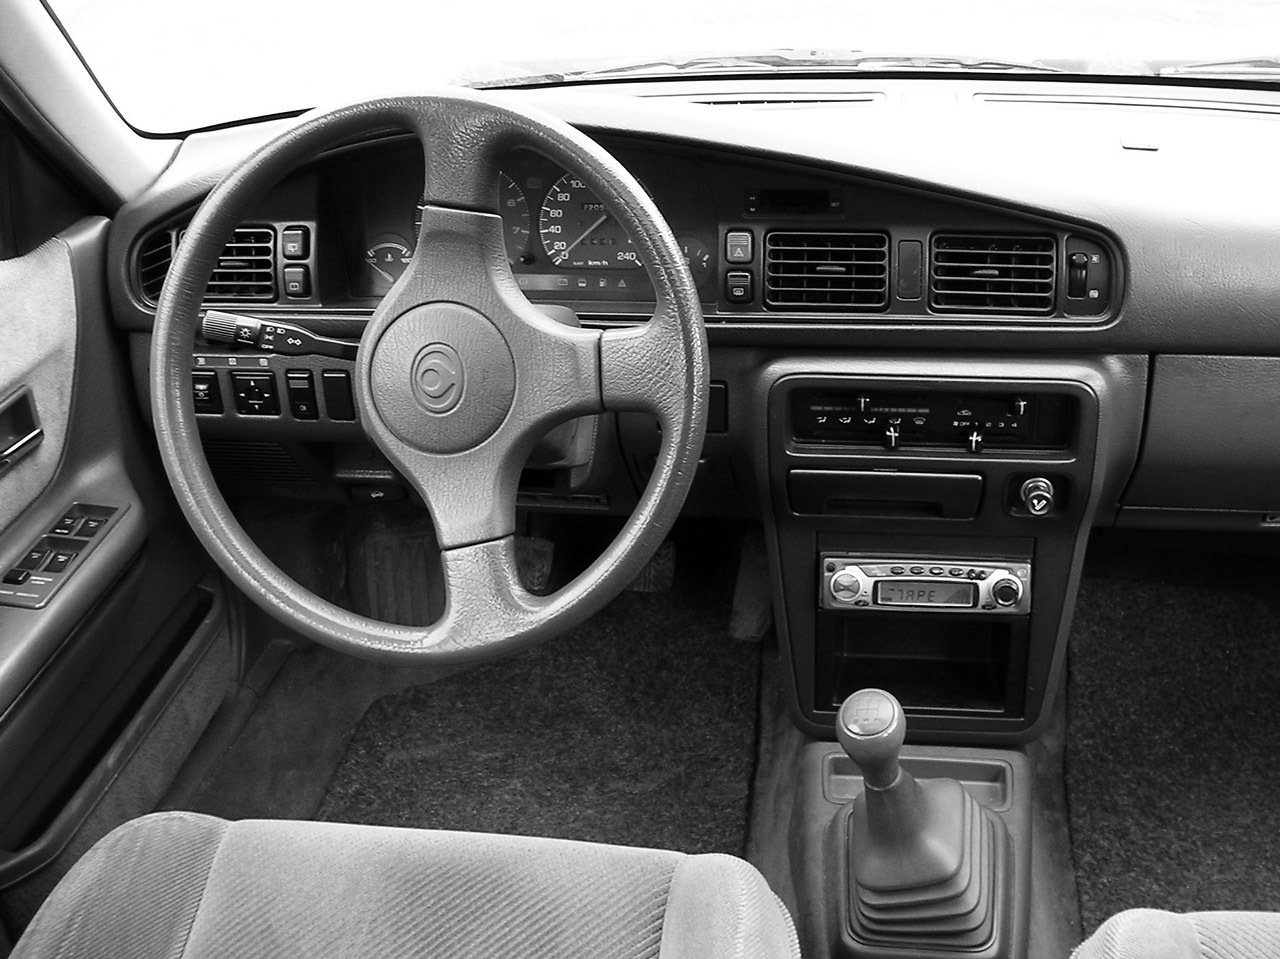 Toyota Carina II Toyota Carina II 16 1988 